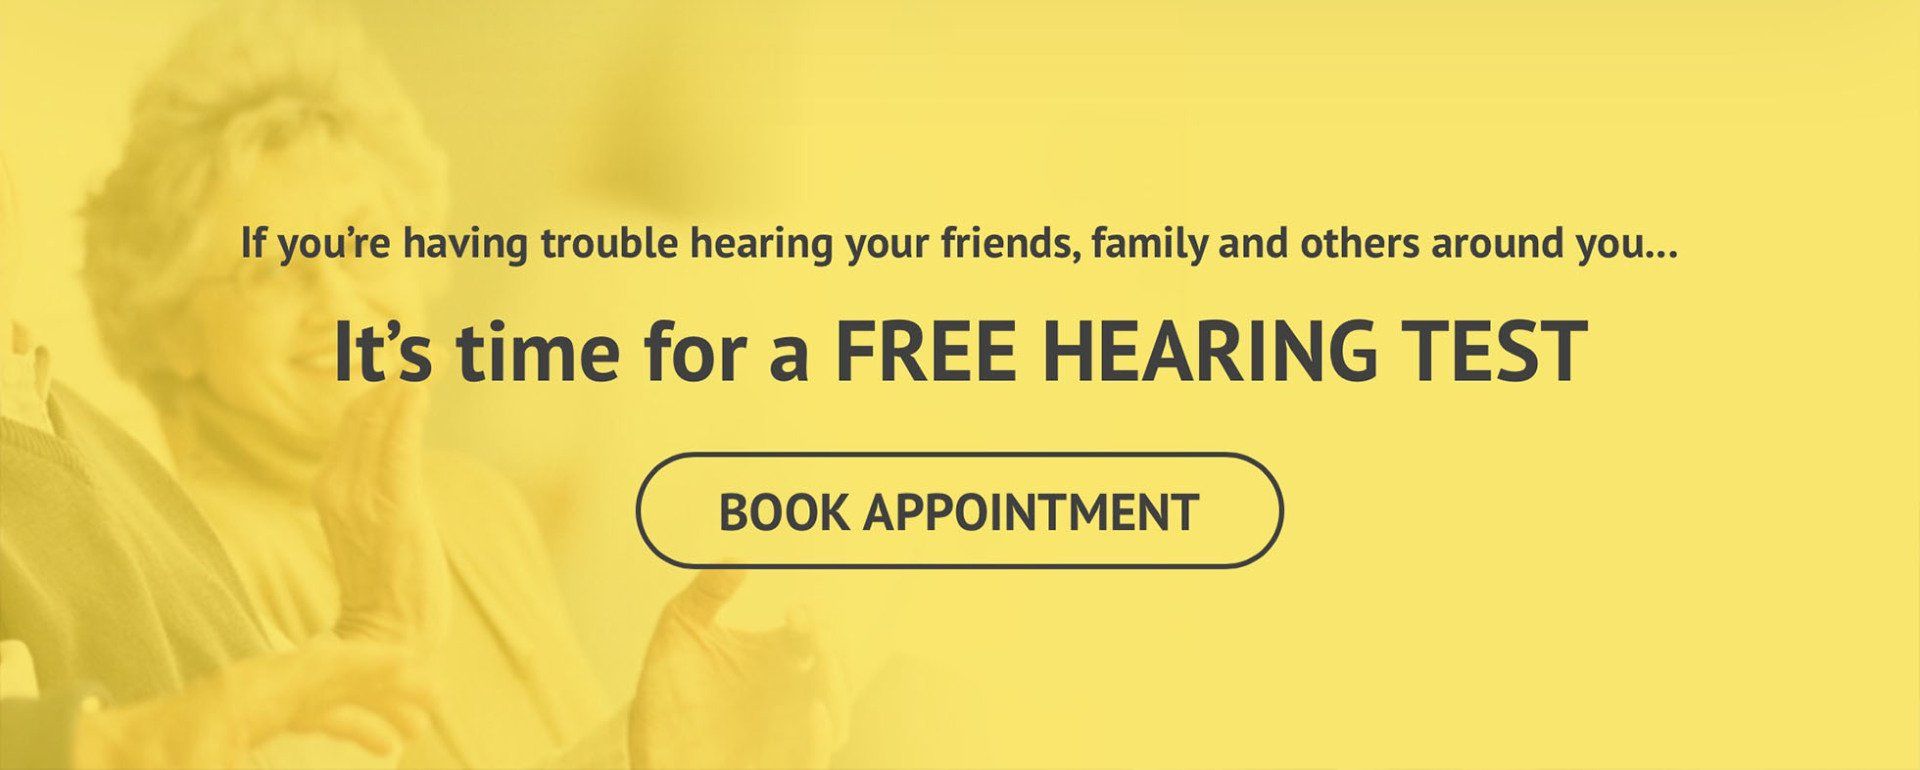 Free hearing test